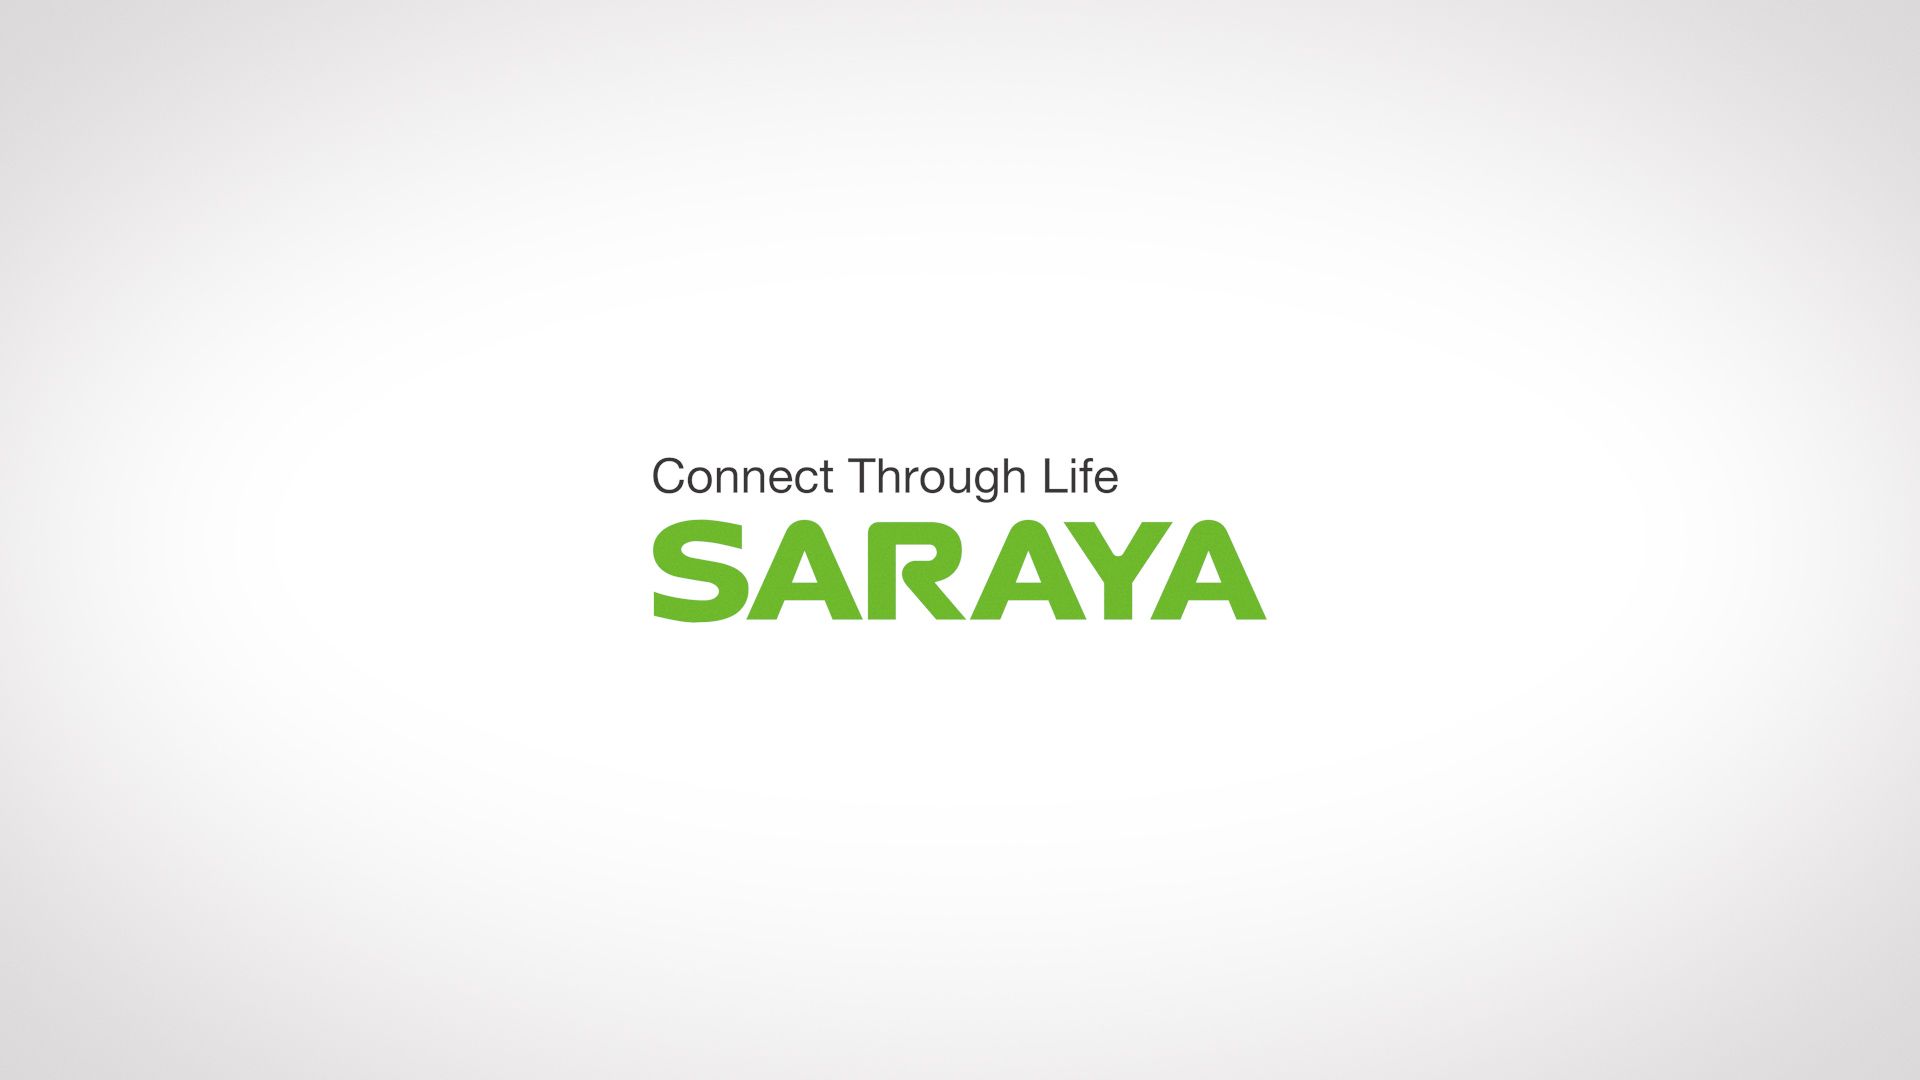 Saraya - Connect Through Life